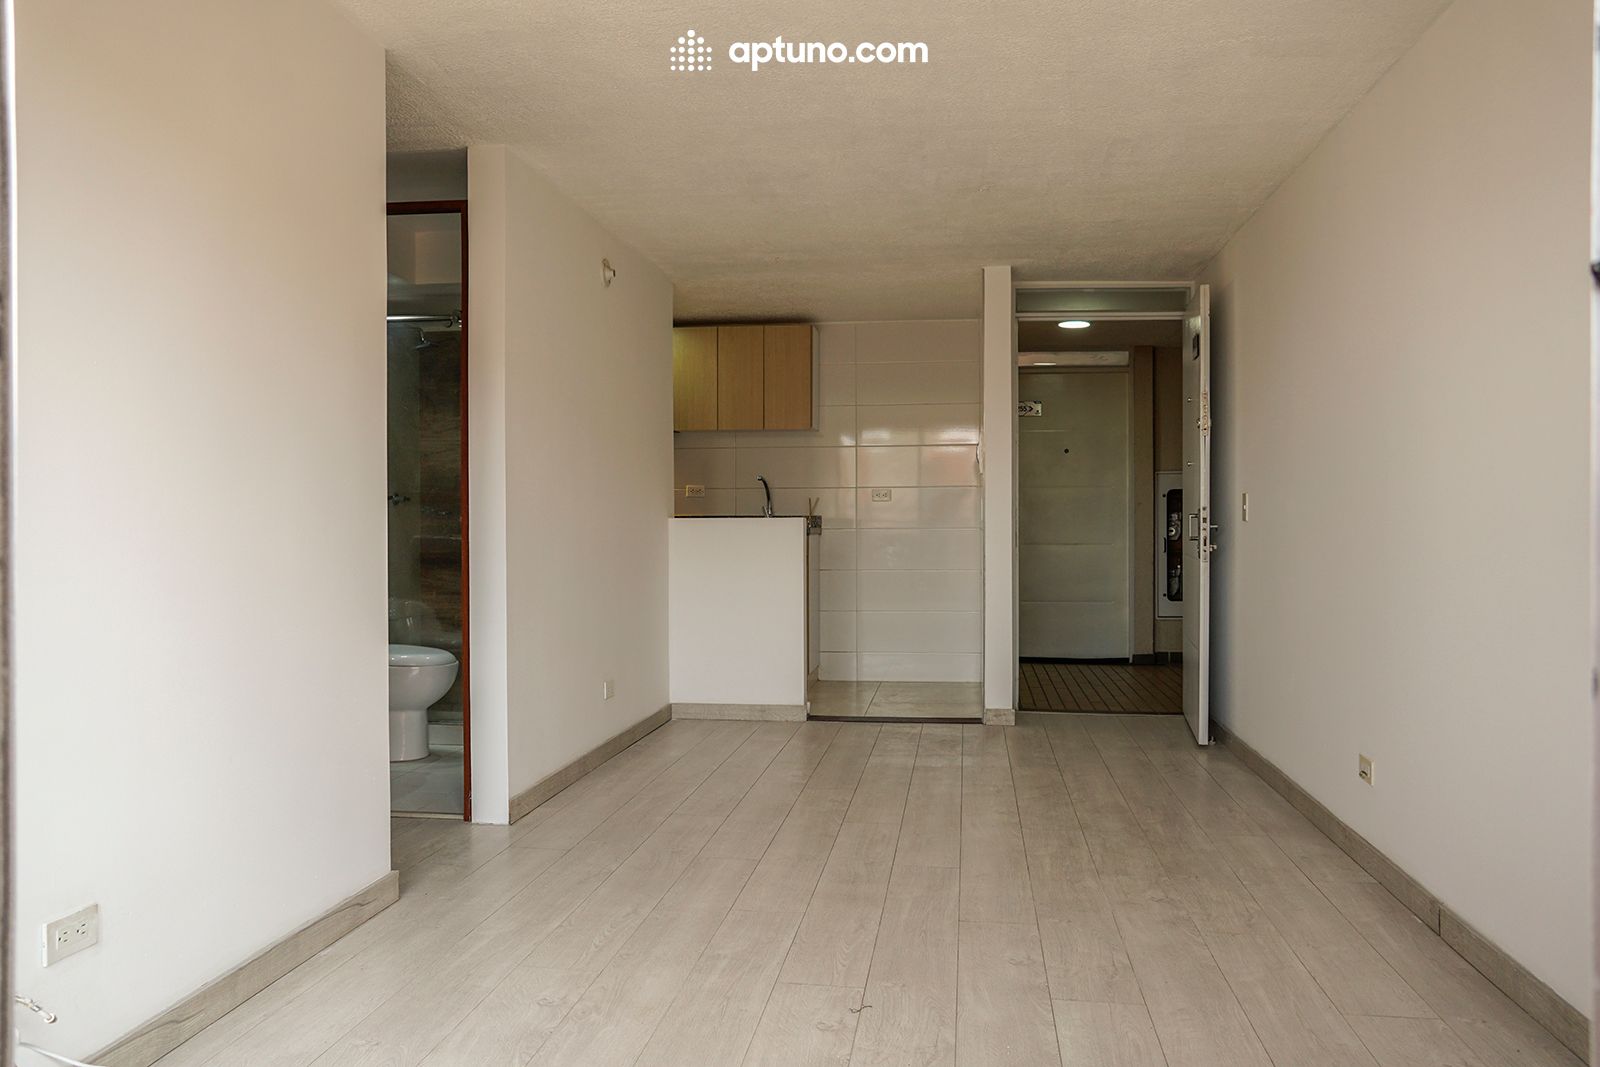 Apartamento en arriendo Madrid 54 m² - $ 850.000,00